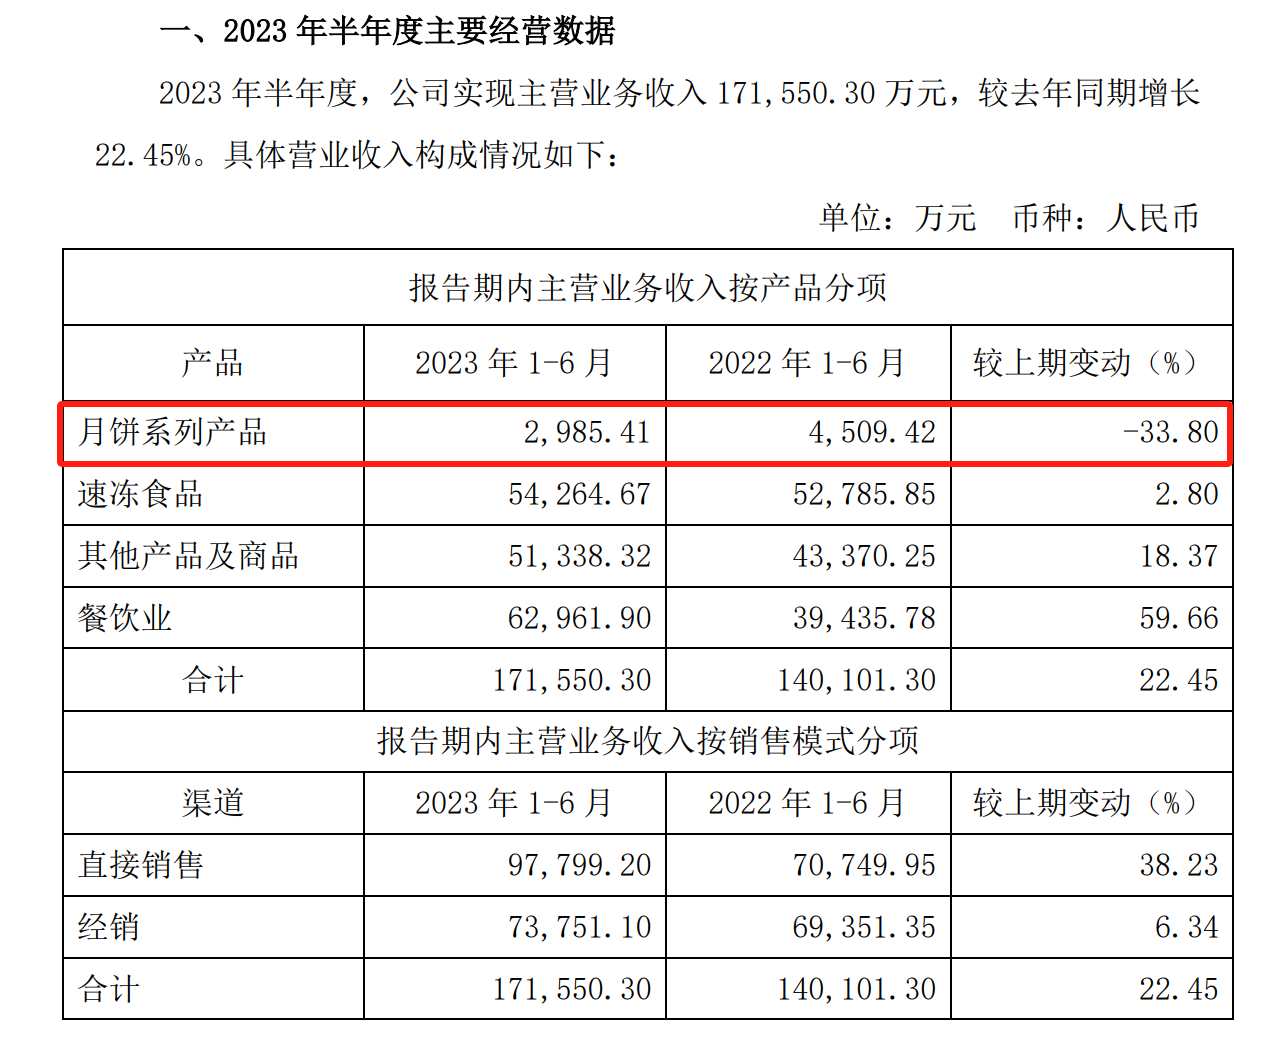 图片来源：广州酒家2023年半年度经营数据公告